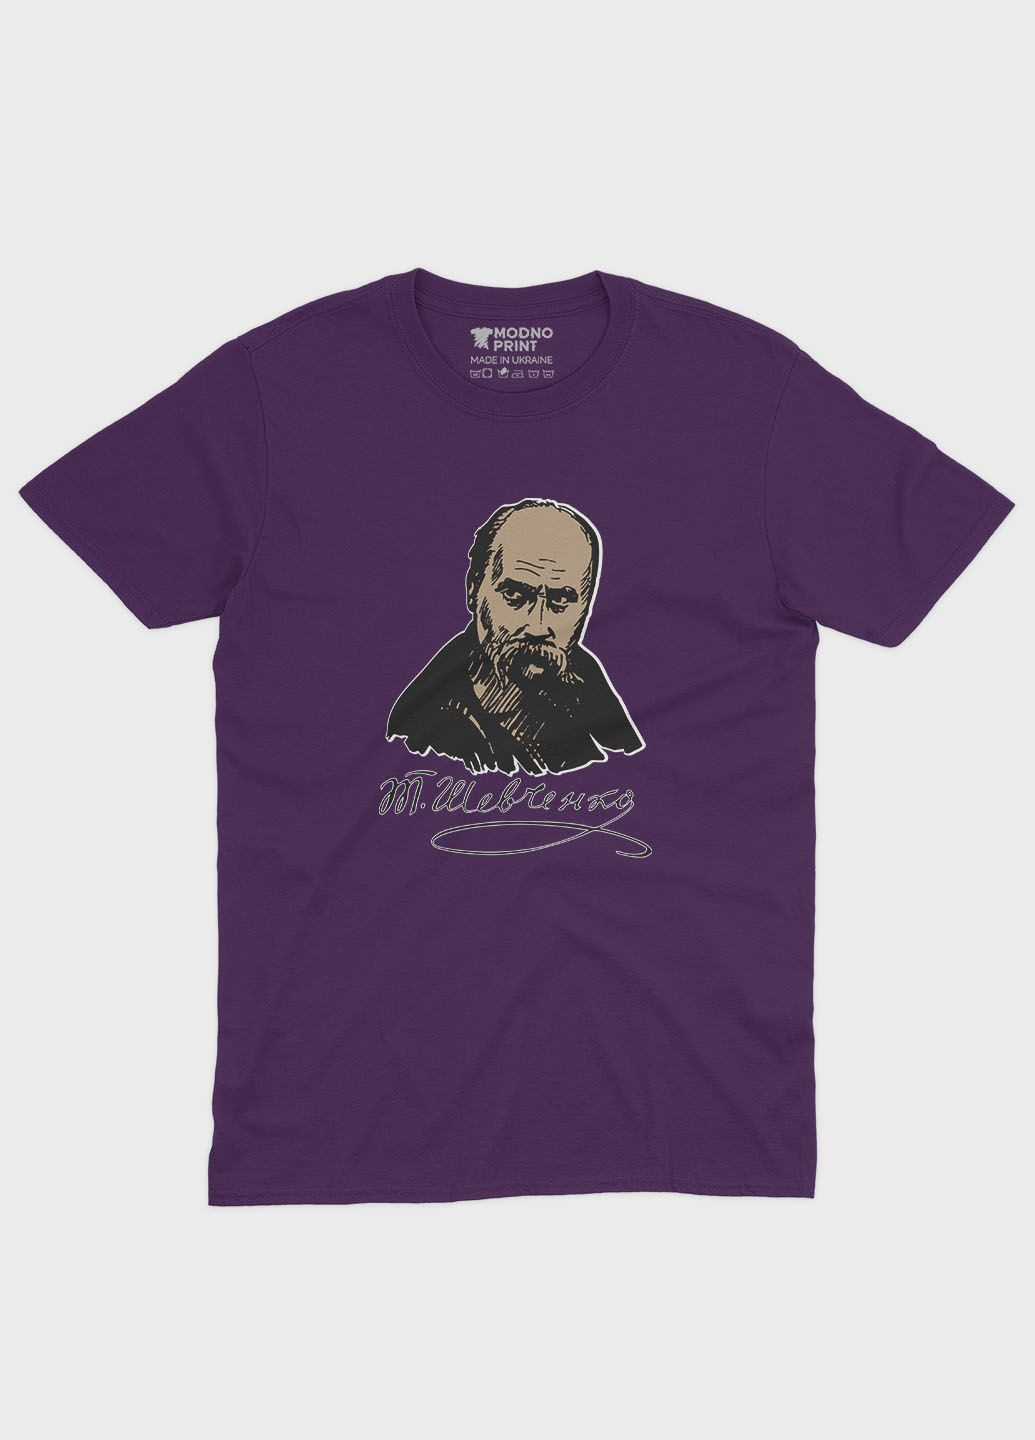 Фиолетовая мужская футболка с патриотическим принтом тарас шевченко (ts001-2-dby-005-1-054) Modno